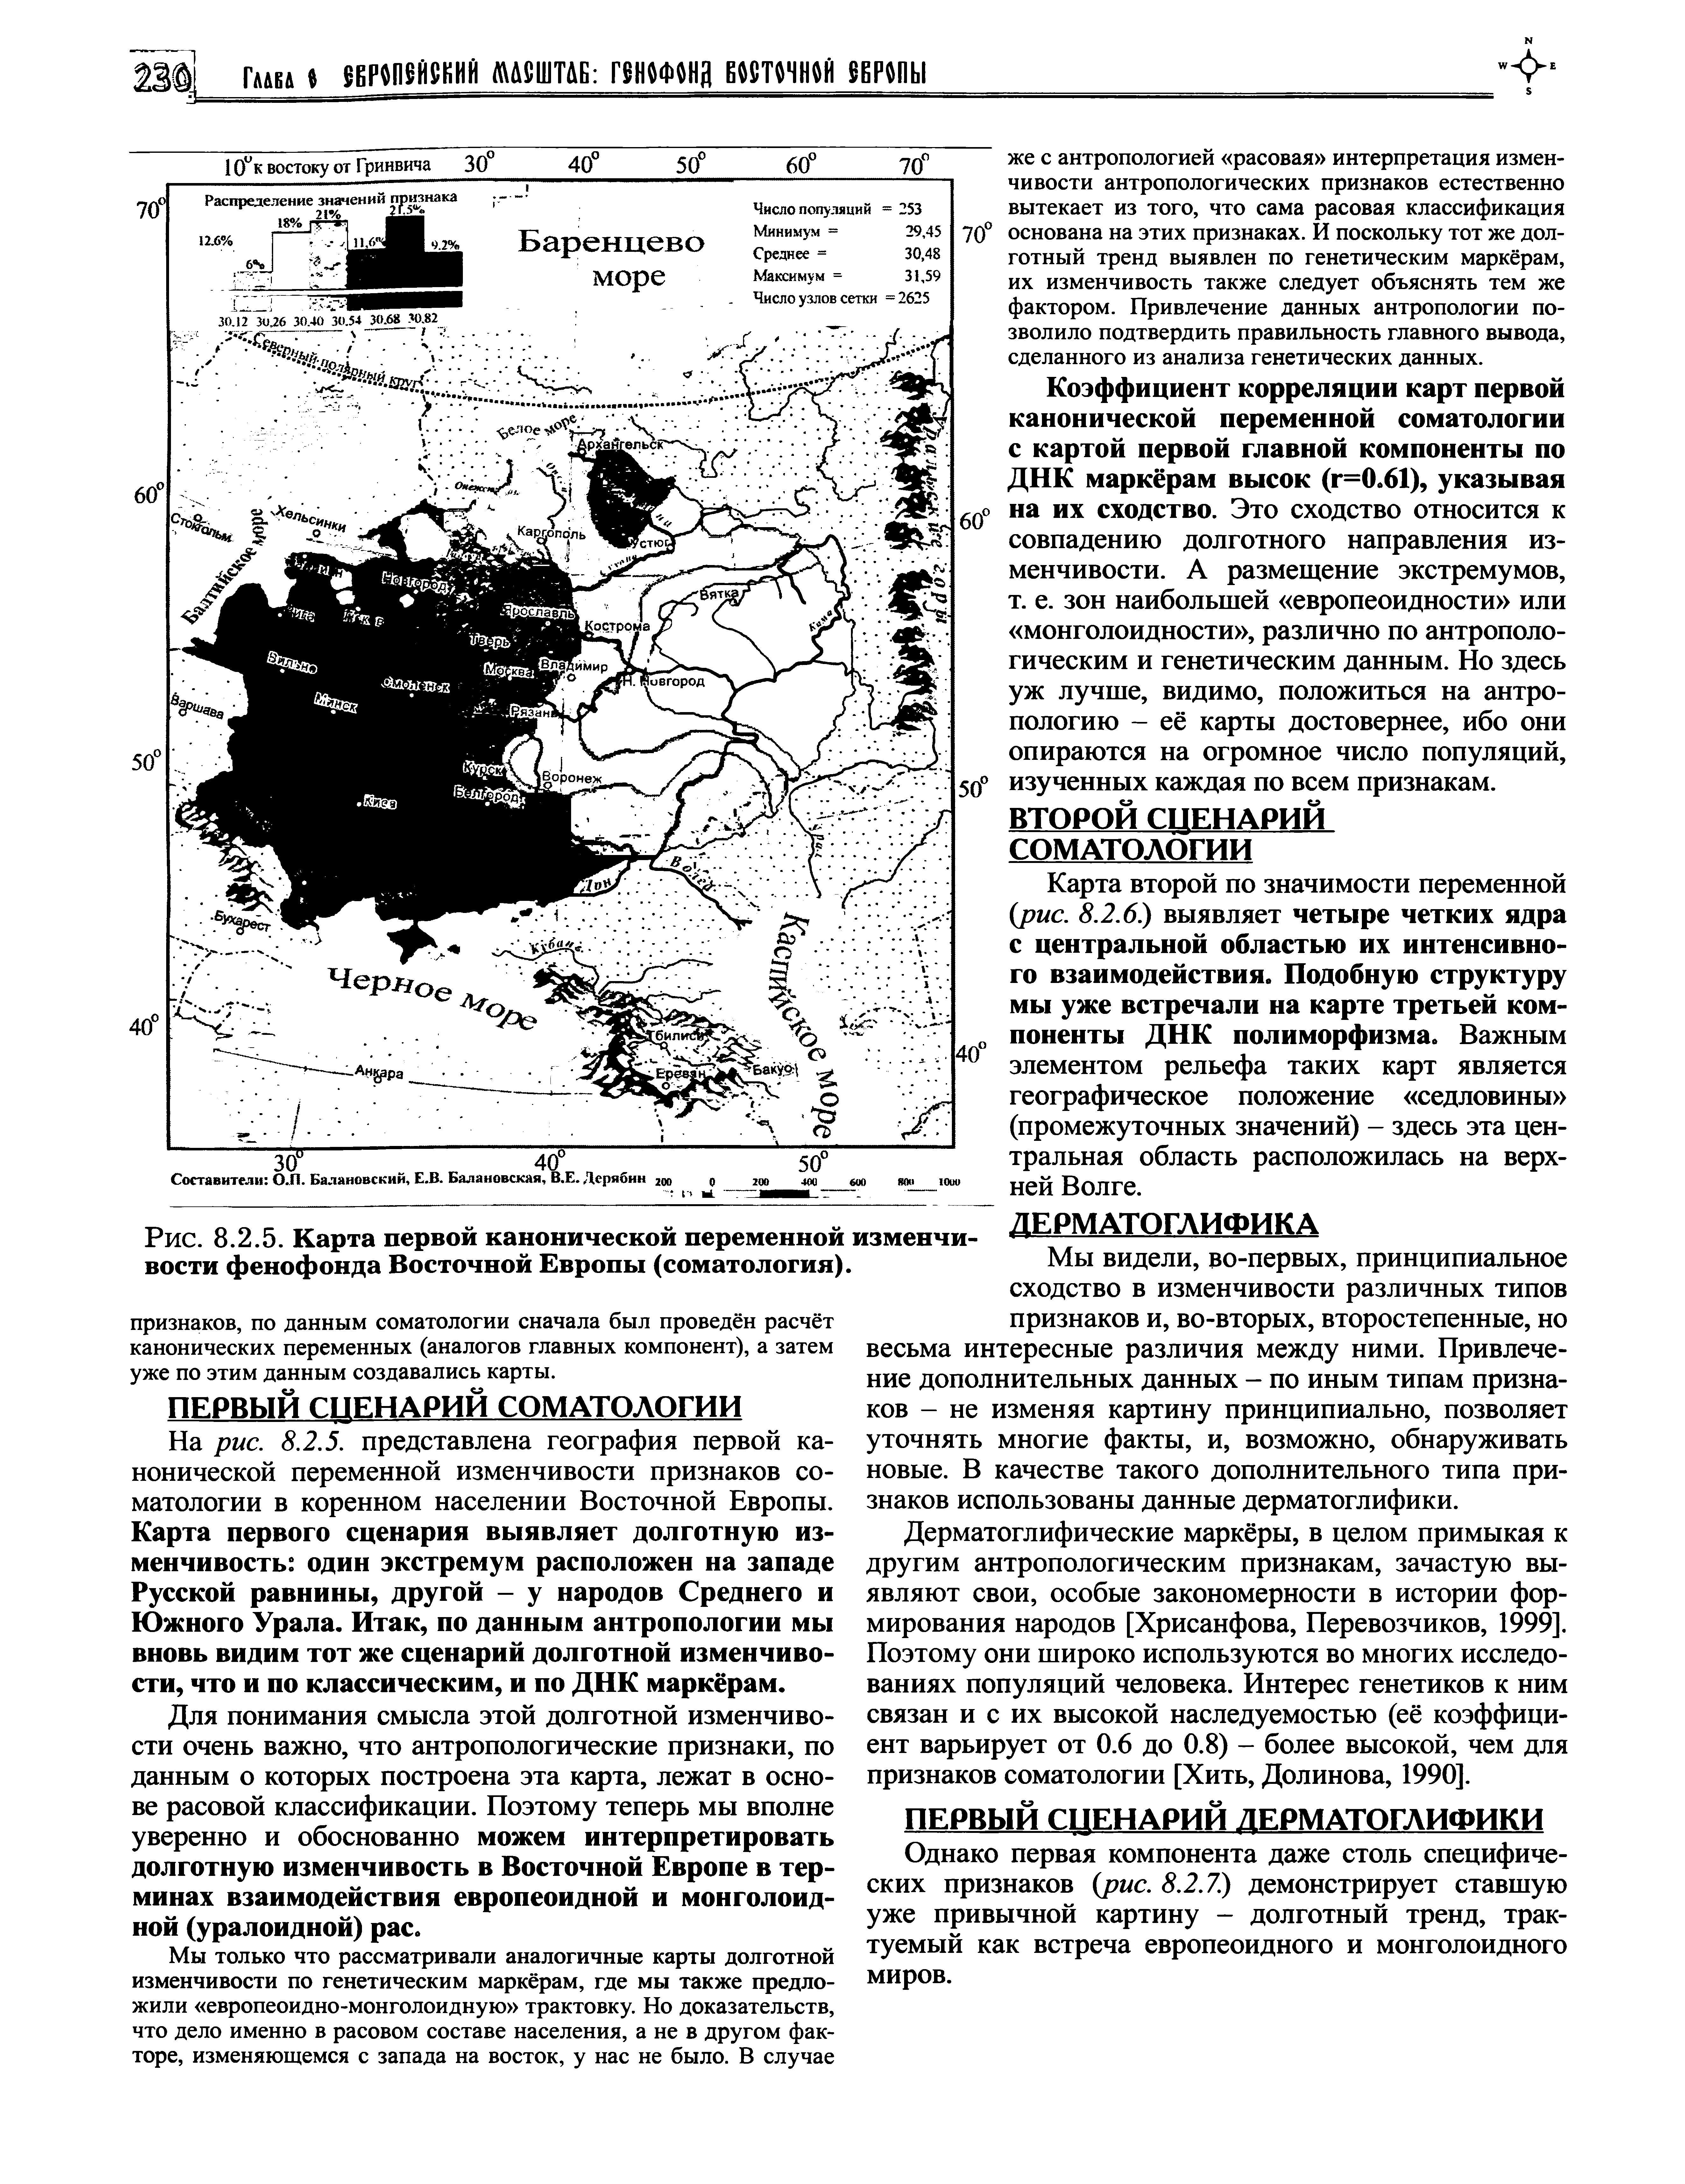 Рис. 8.2.5. Карта первой канонической переменной вости фенофонда Восточной Европы (соматология).